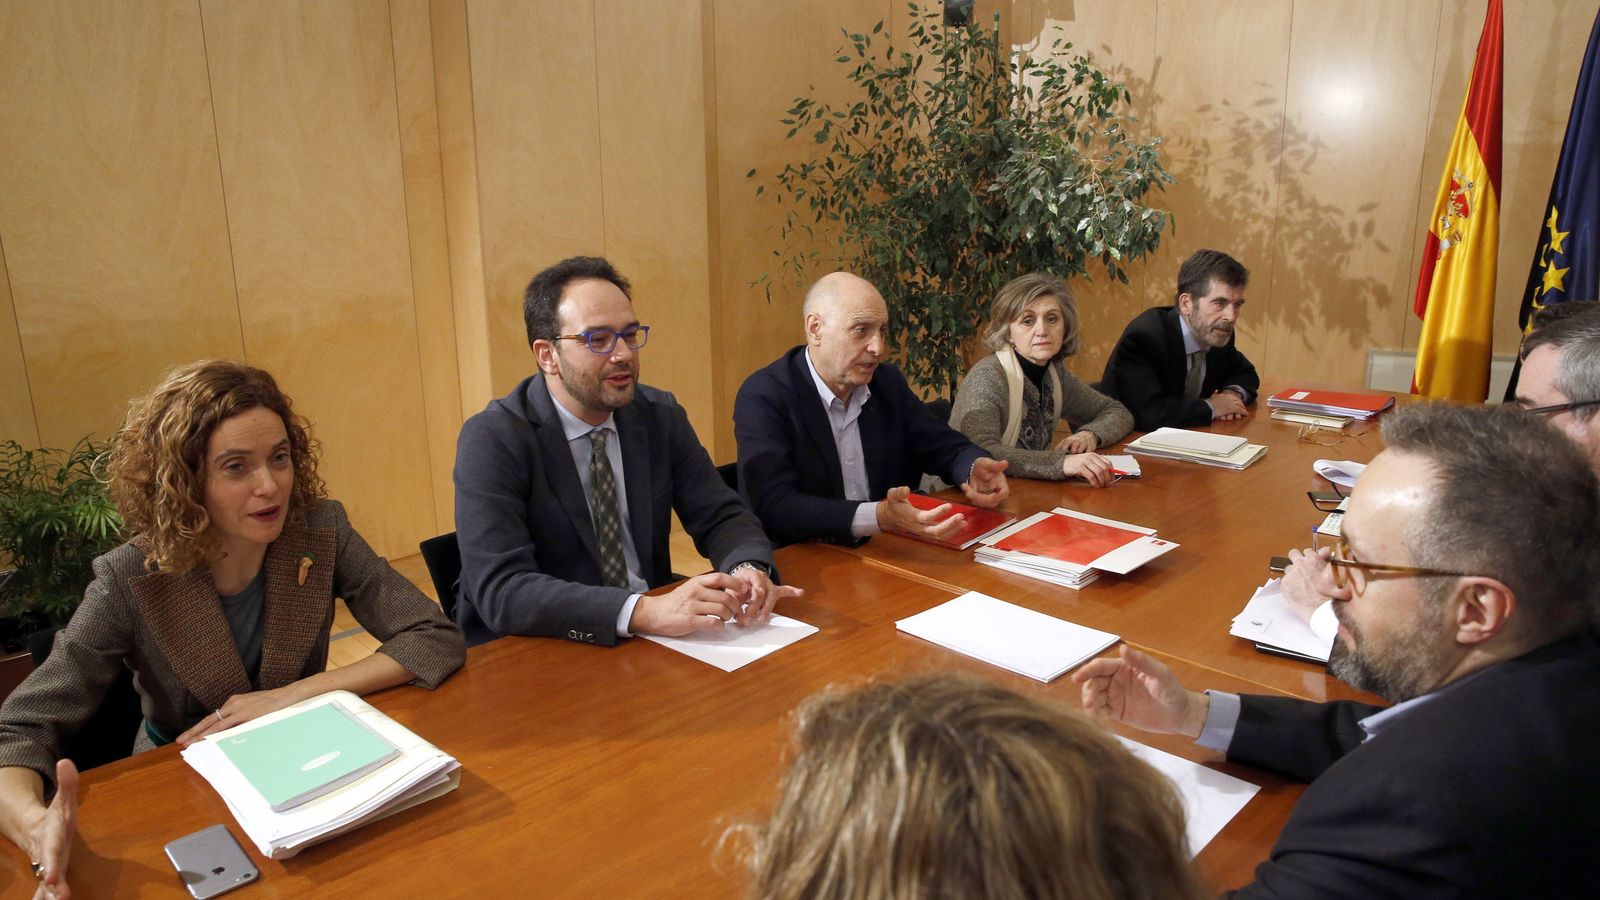 Foto: Reunión de los equipos negociadores de PSOE y C's el pasado 17 de febrero. Con barba y al fondo, José Enrique Serrano. (EFE)